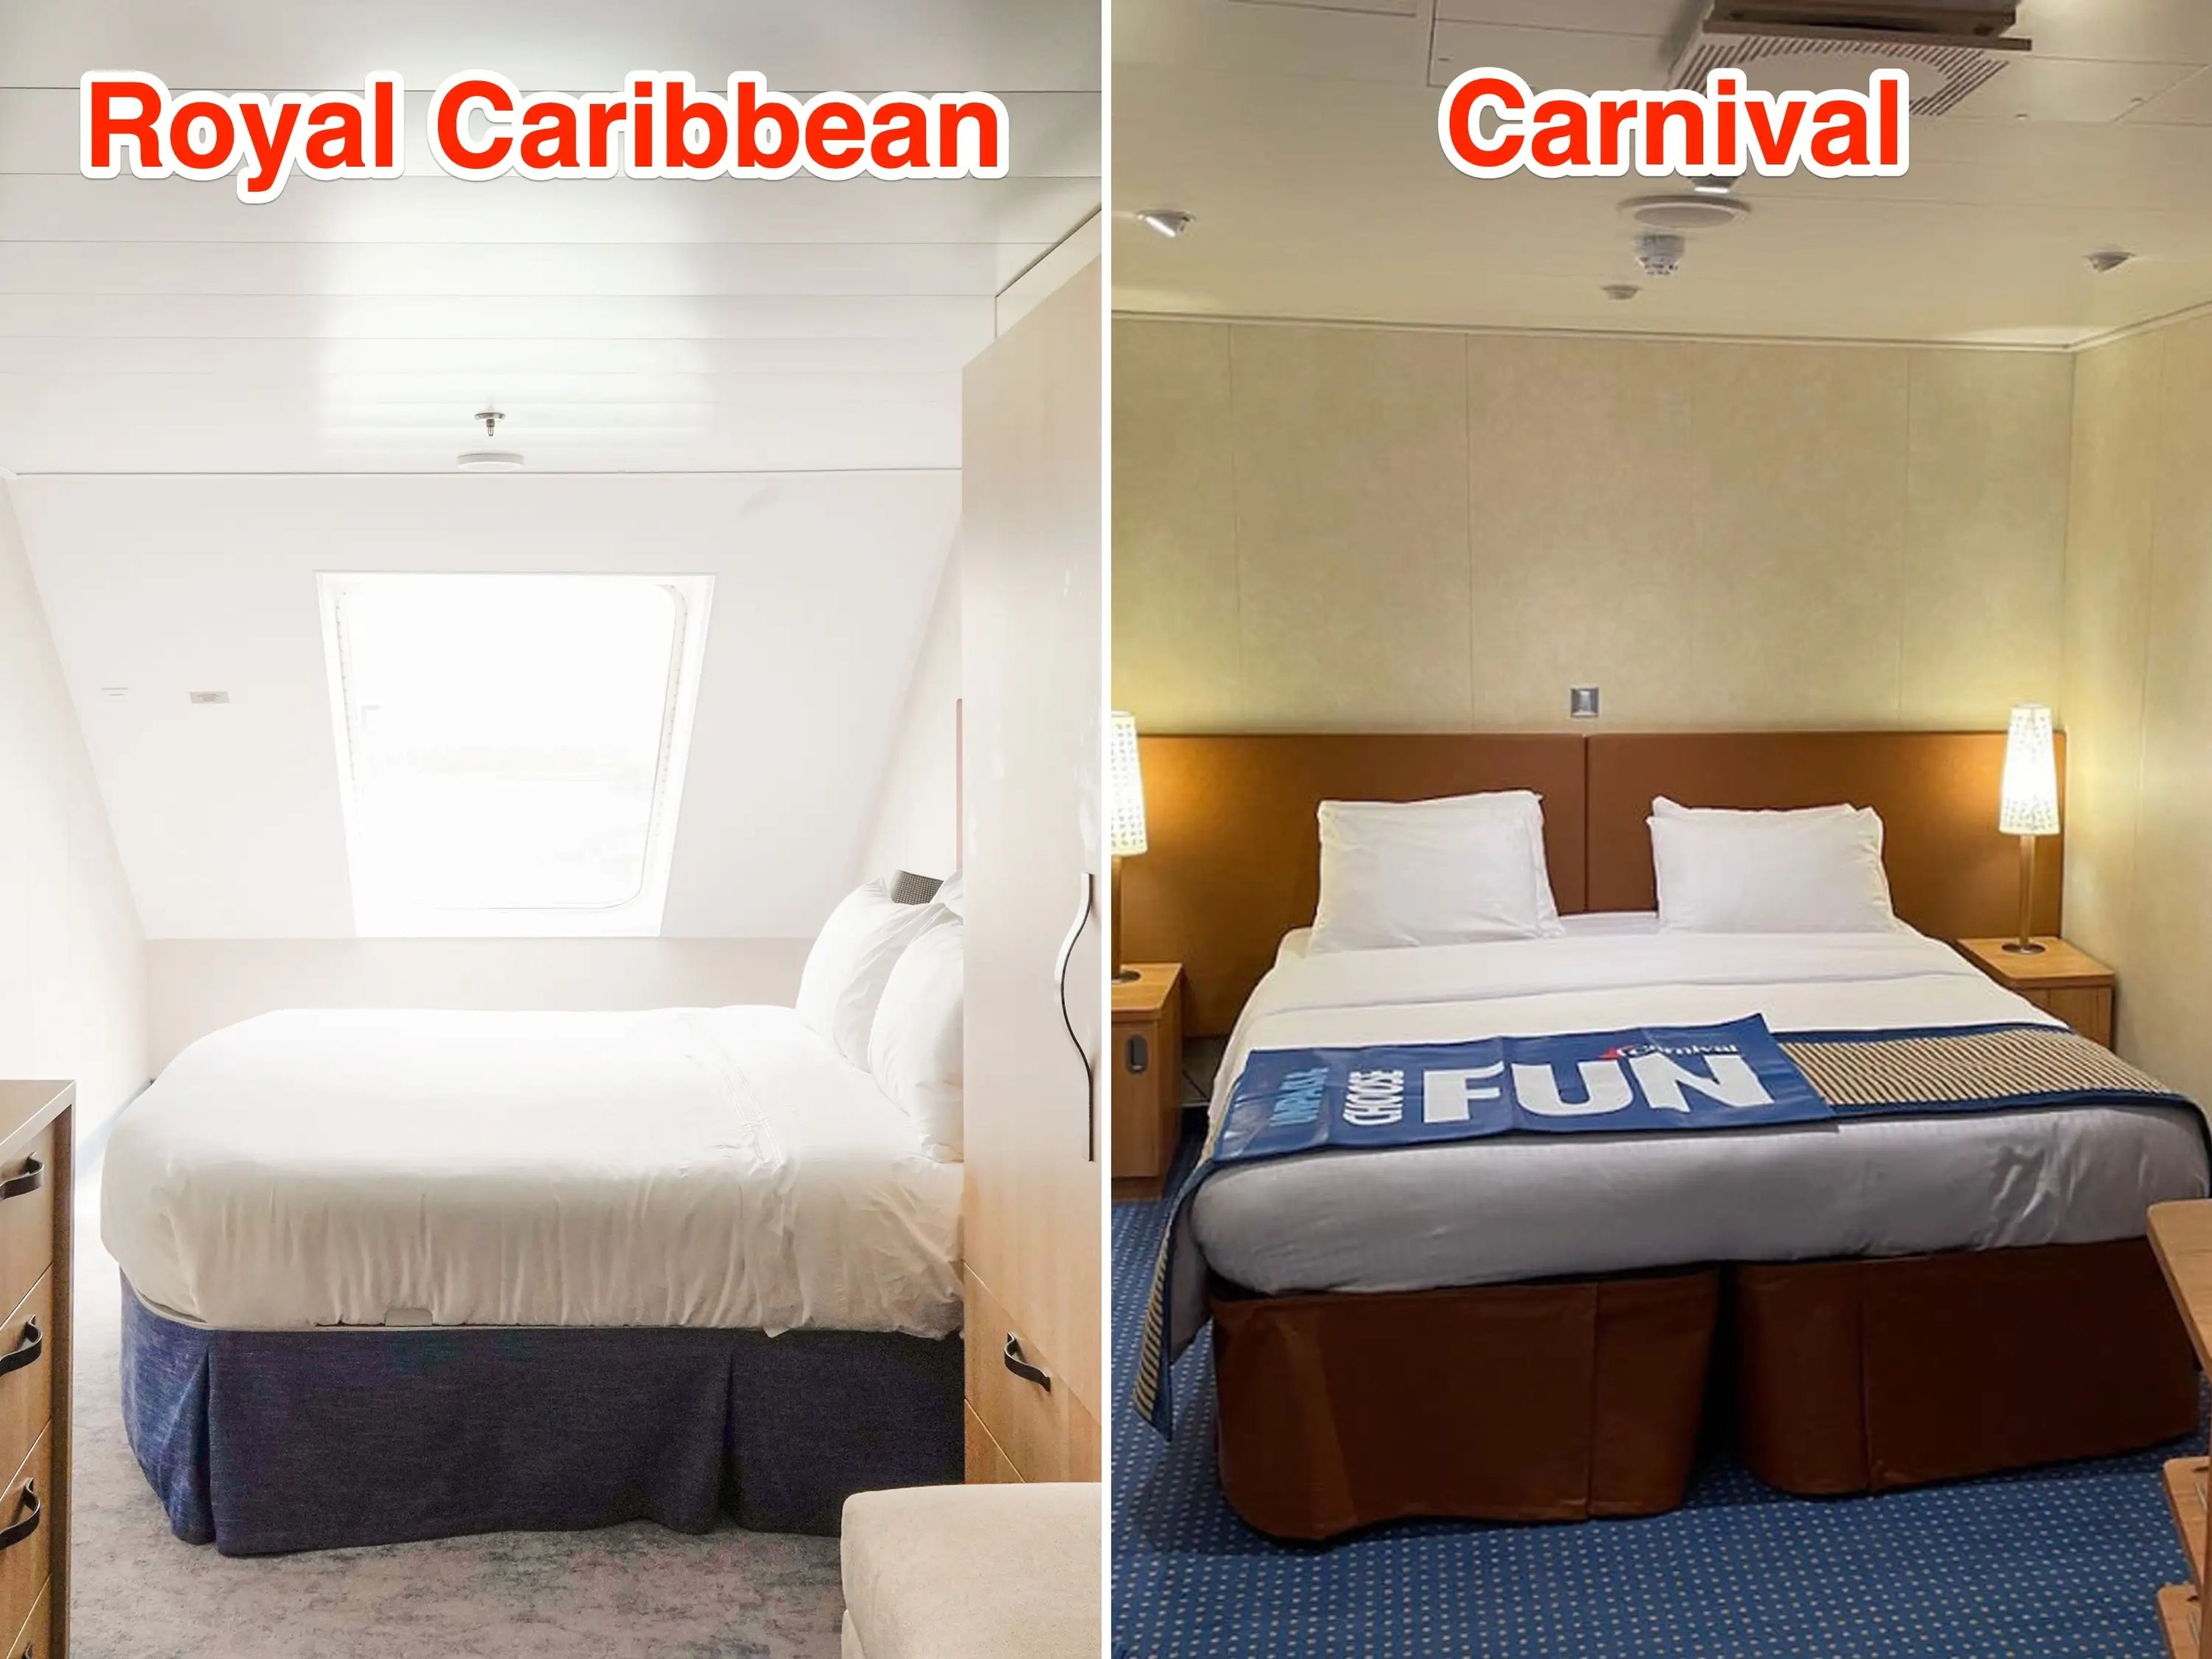 Interior de las habitaciones de Royal Caribbean (I) y Carnival (D).